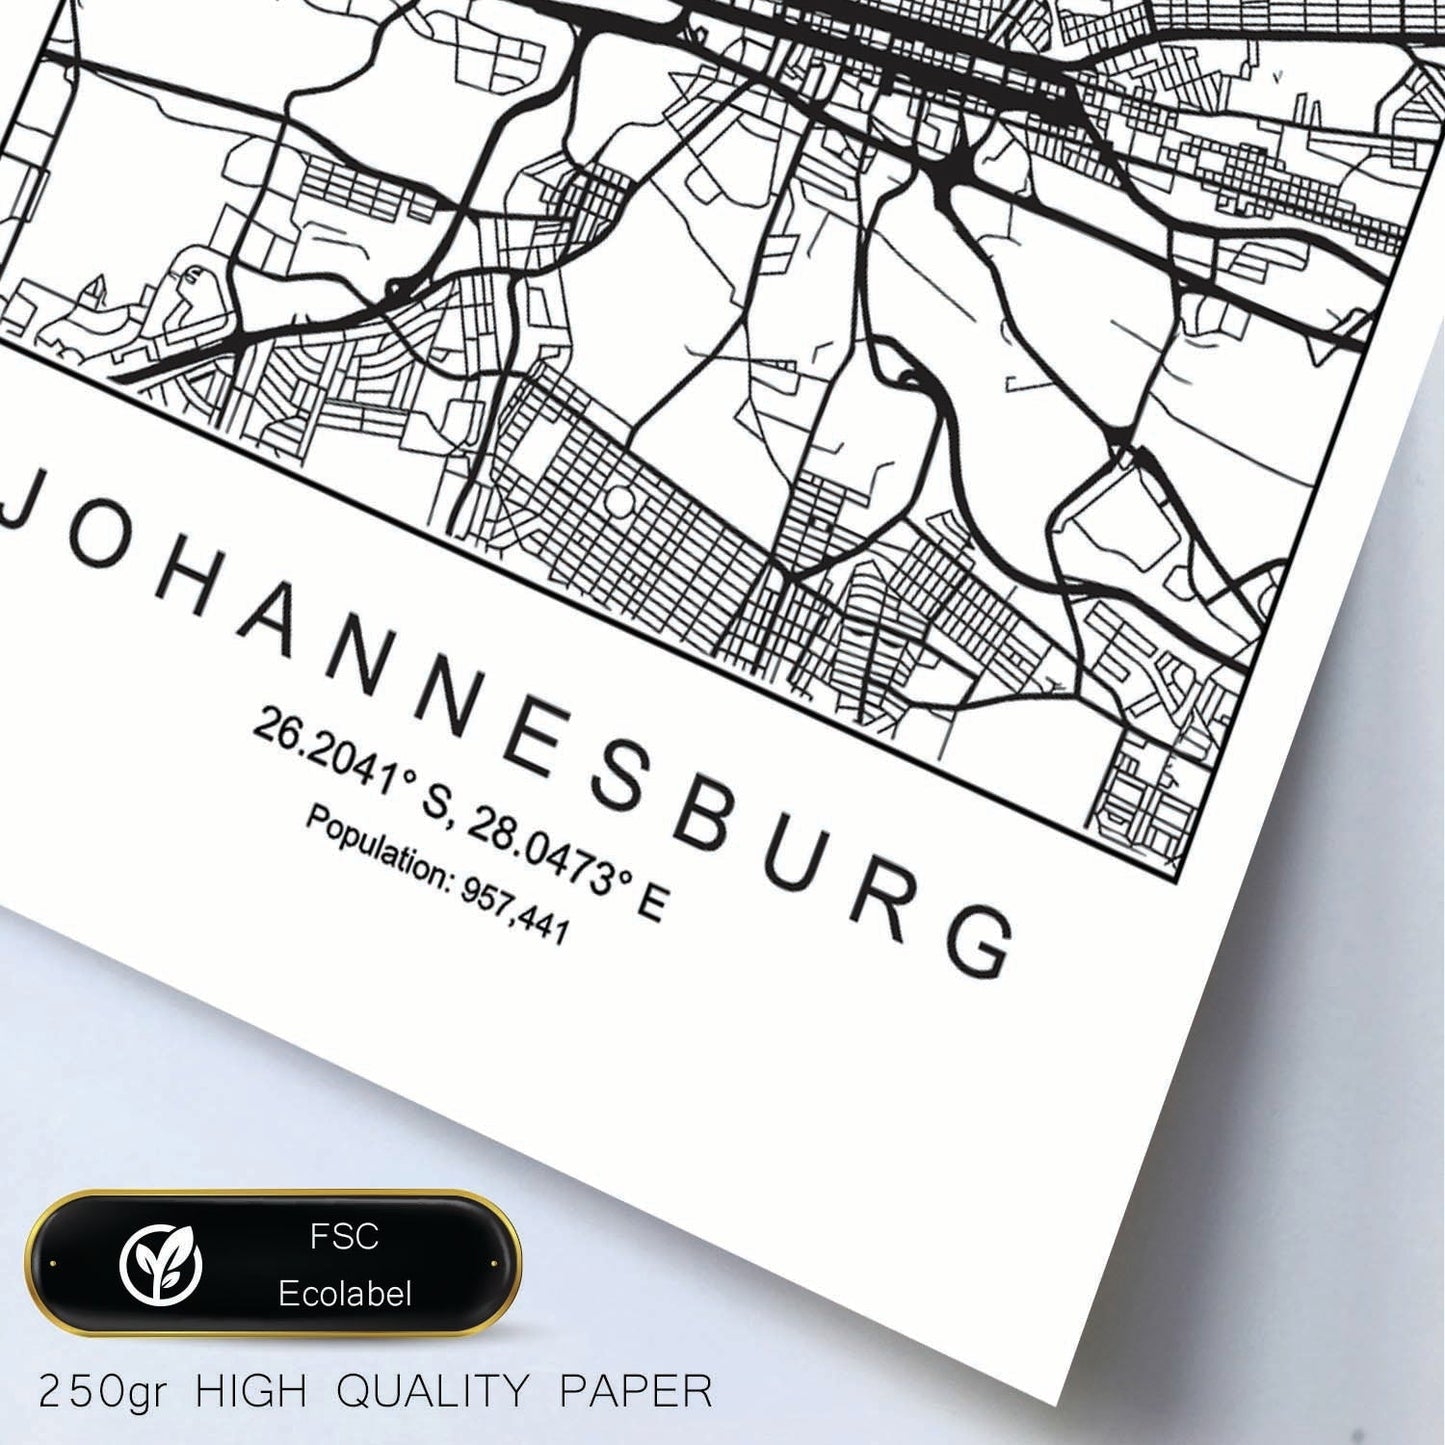 Lámina mapa de la ciudad Johannesurg estilo nordico en blanco y negro.-Artwork-Nacnic-Nacnic Estudio SL